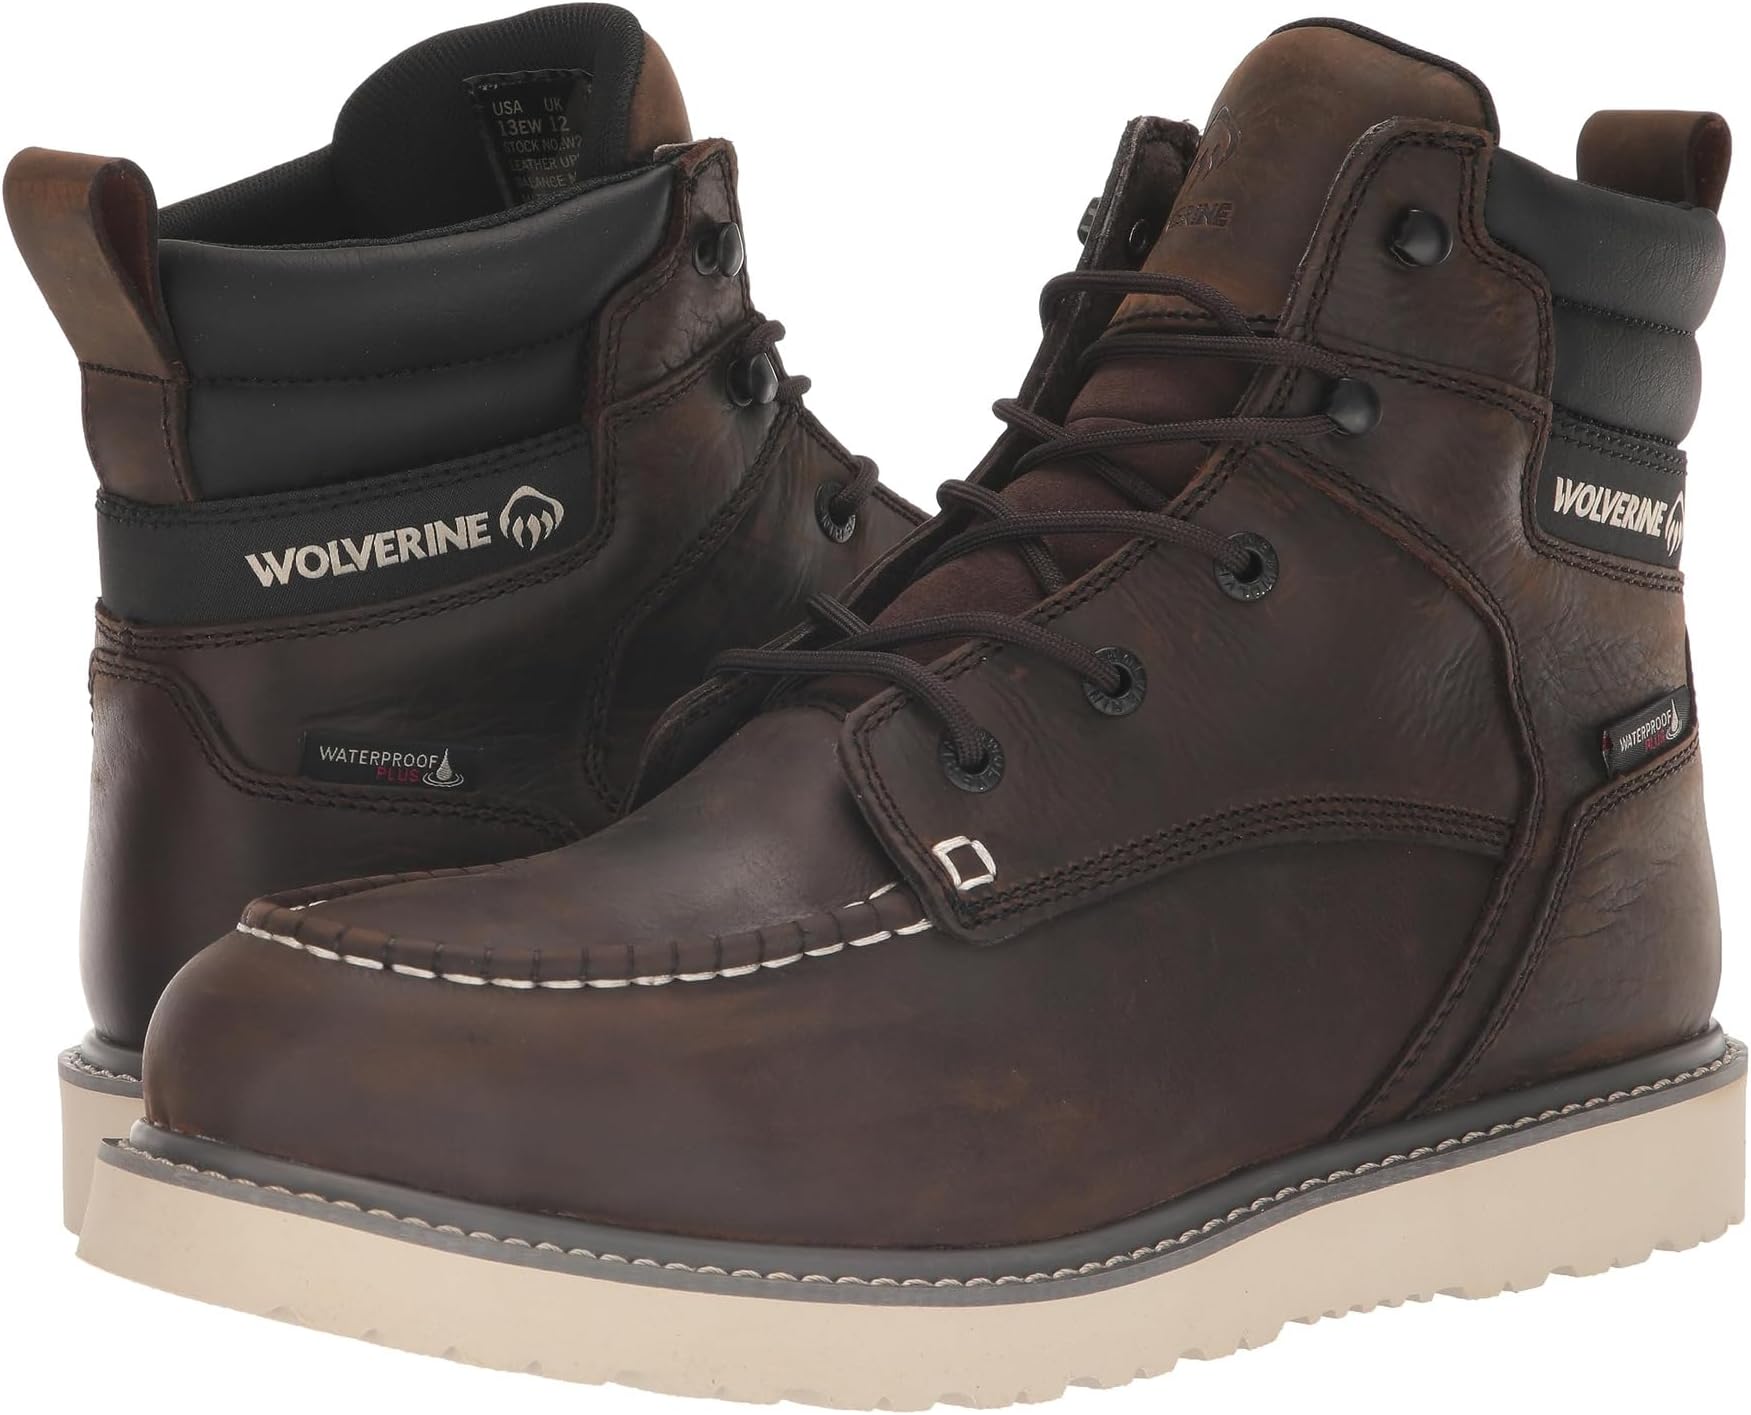 Рабочая обувь водонепроницаемая Trade Wedge Waterproof 6 Wolverine, цвет Dark Brown